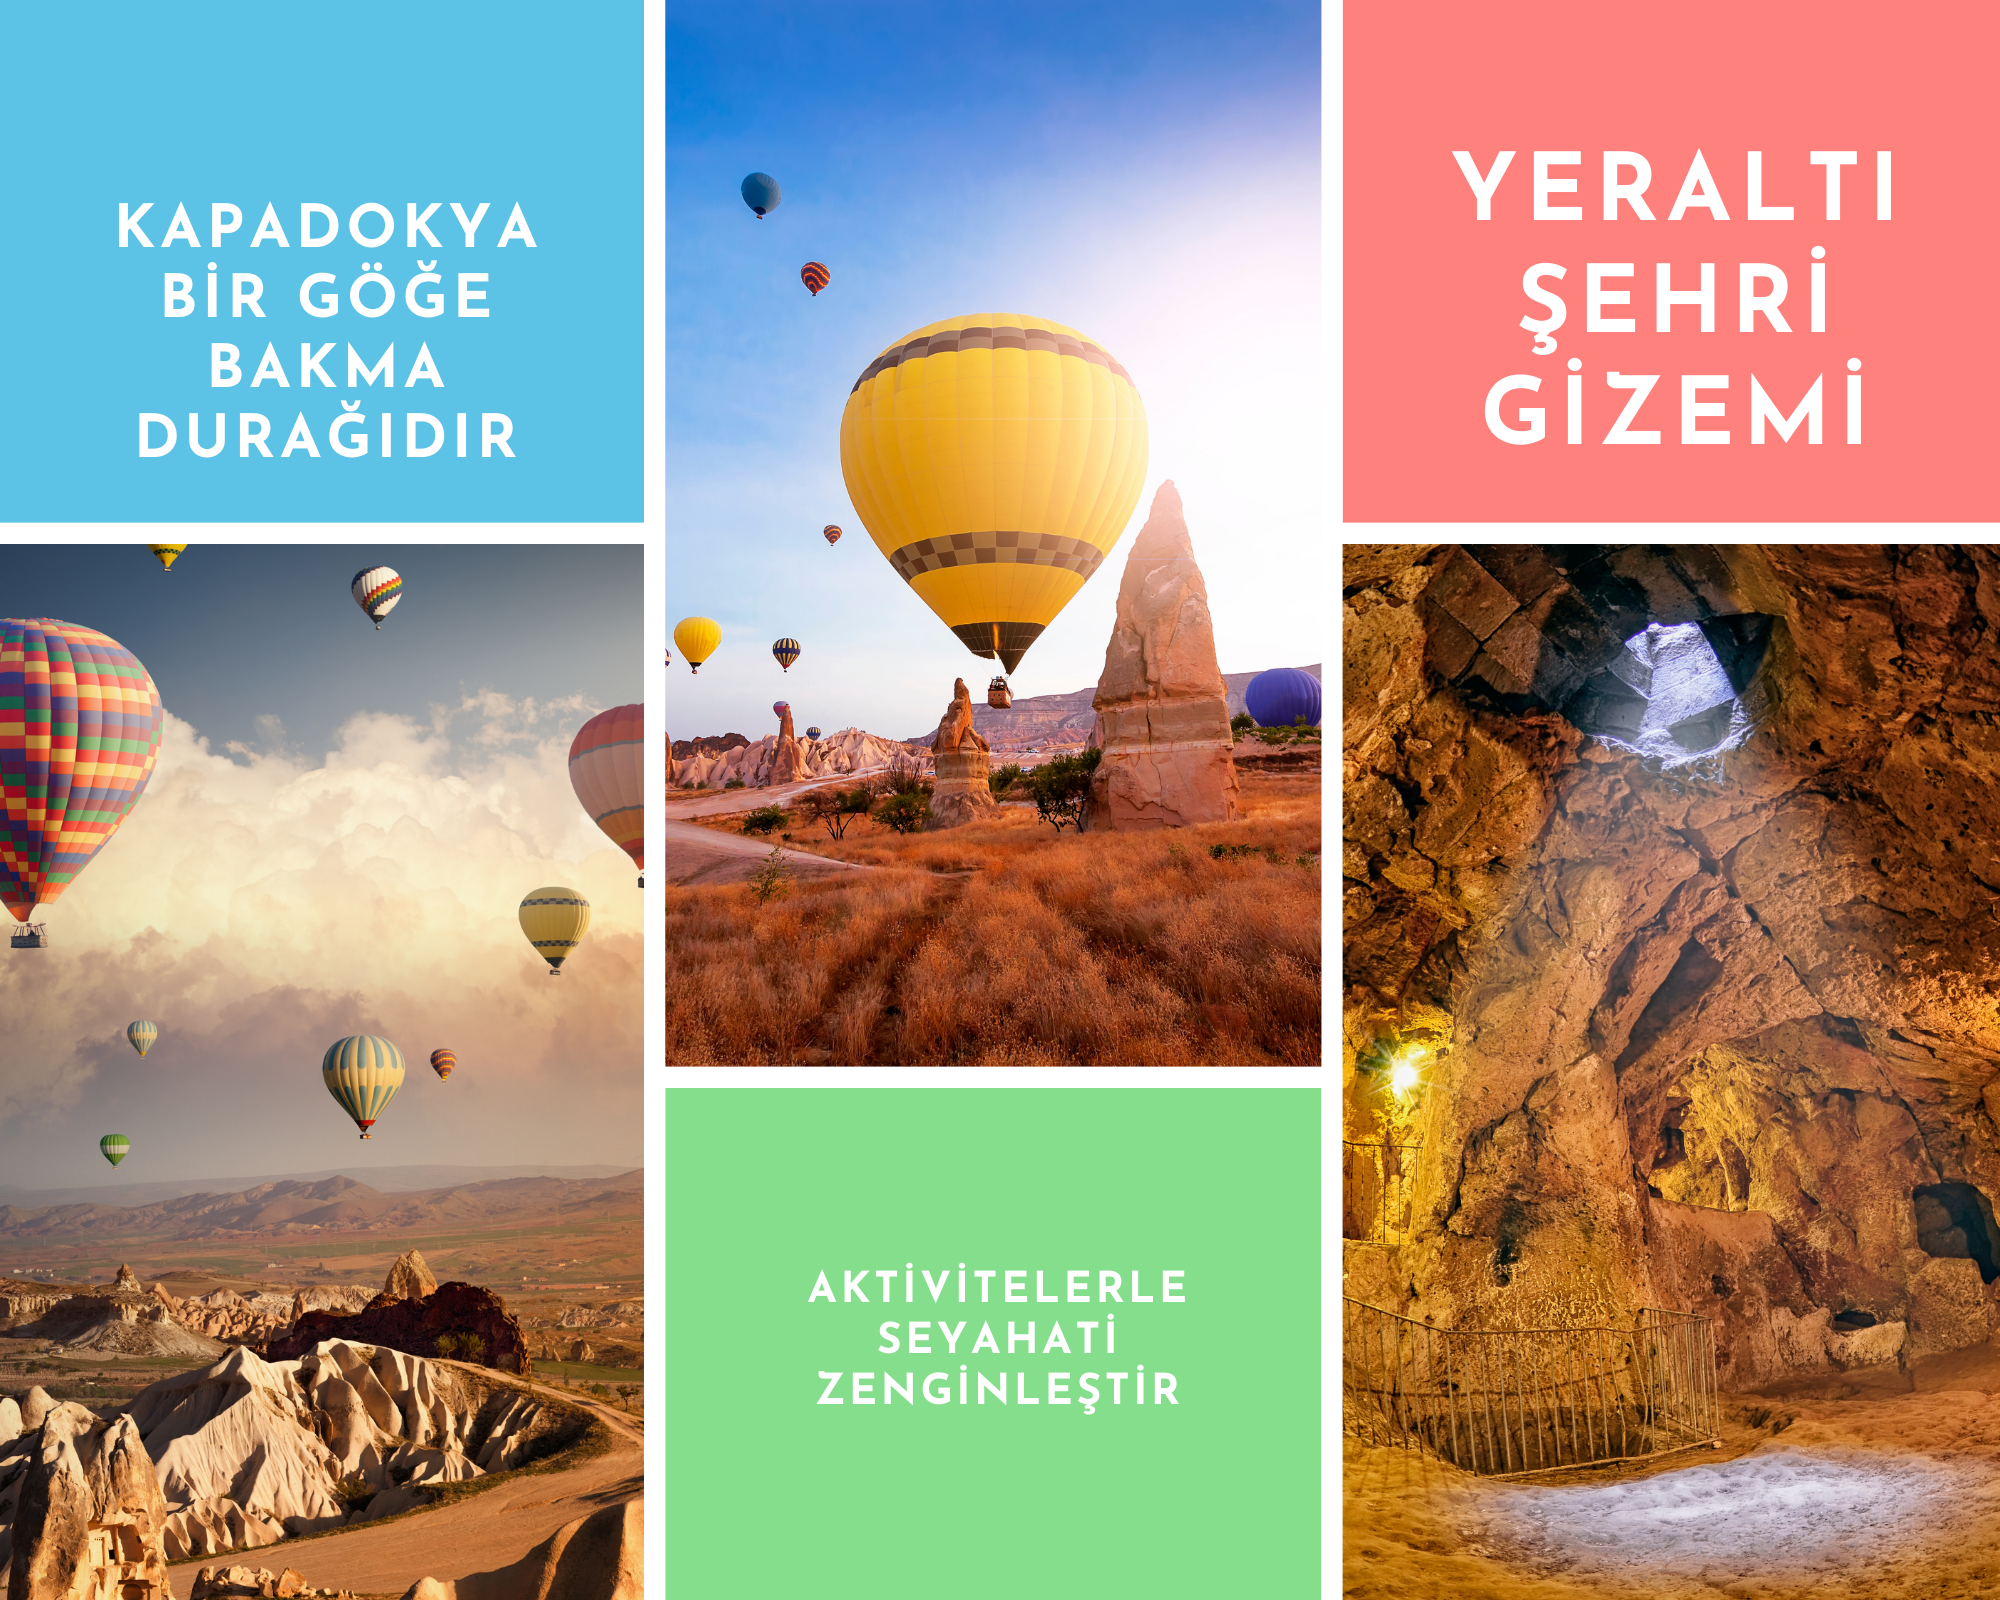 Kapadokya balon turu fiyatları 2022